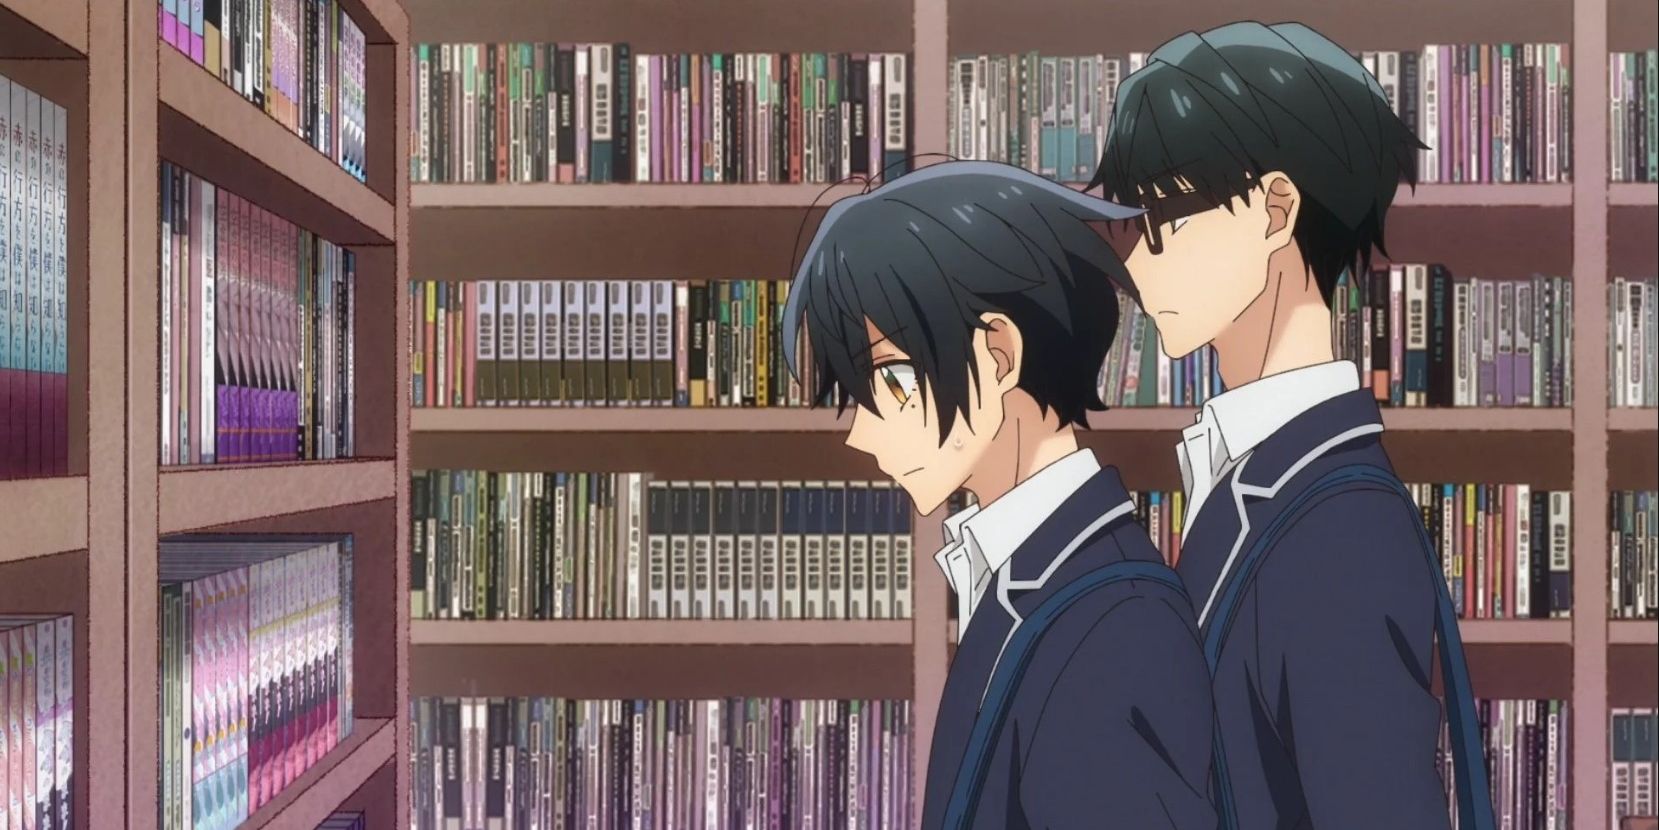 Miyano and Kurekawa look at manga on store bookshelves